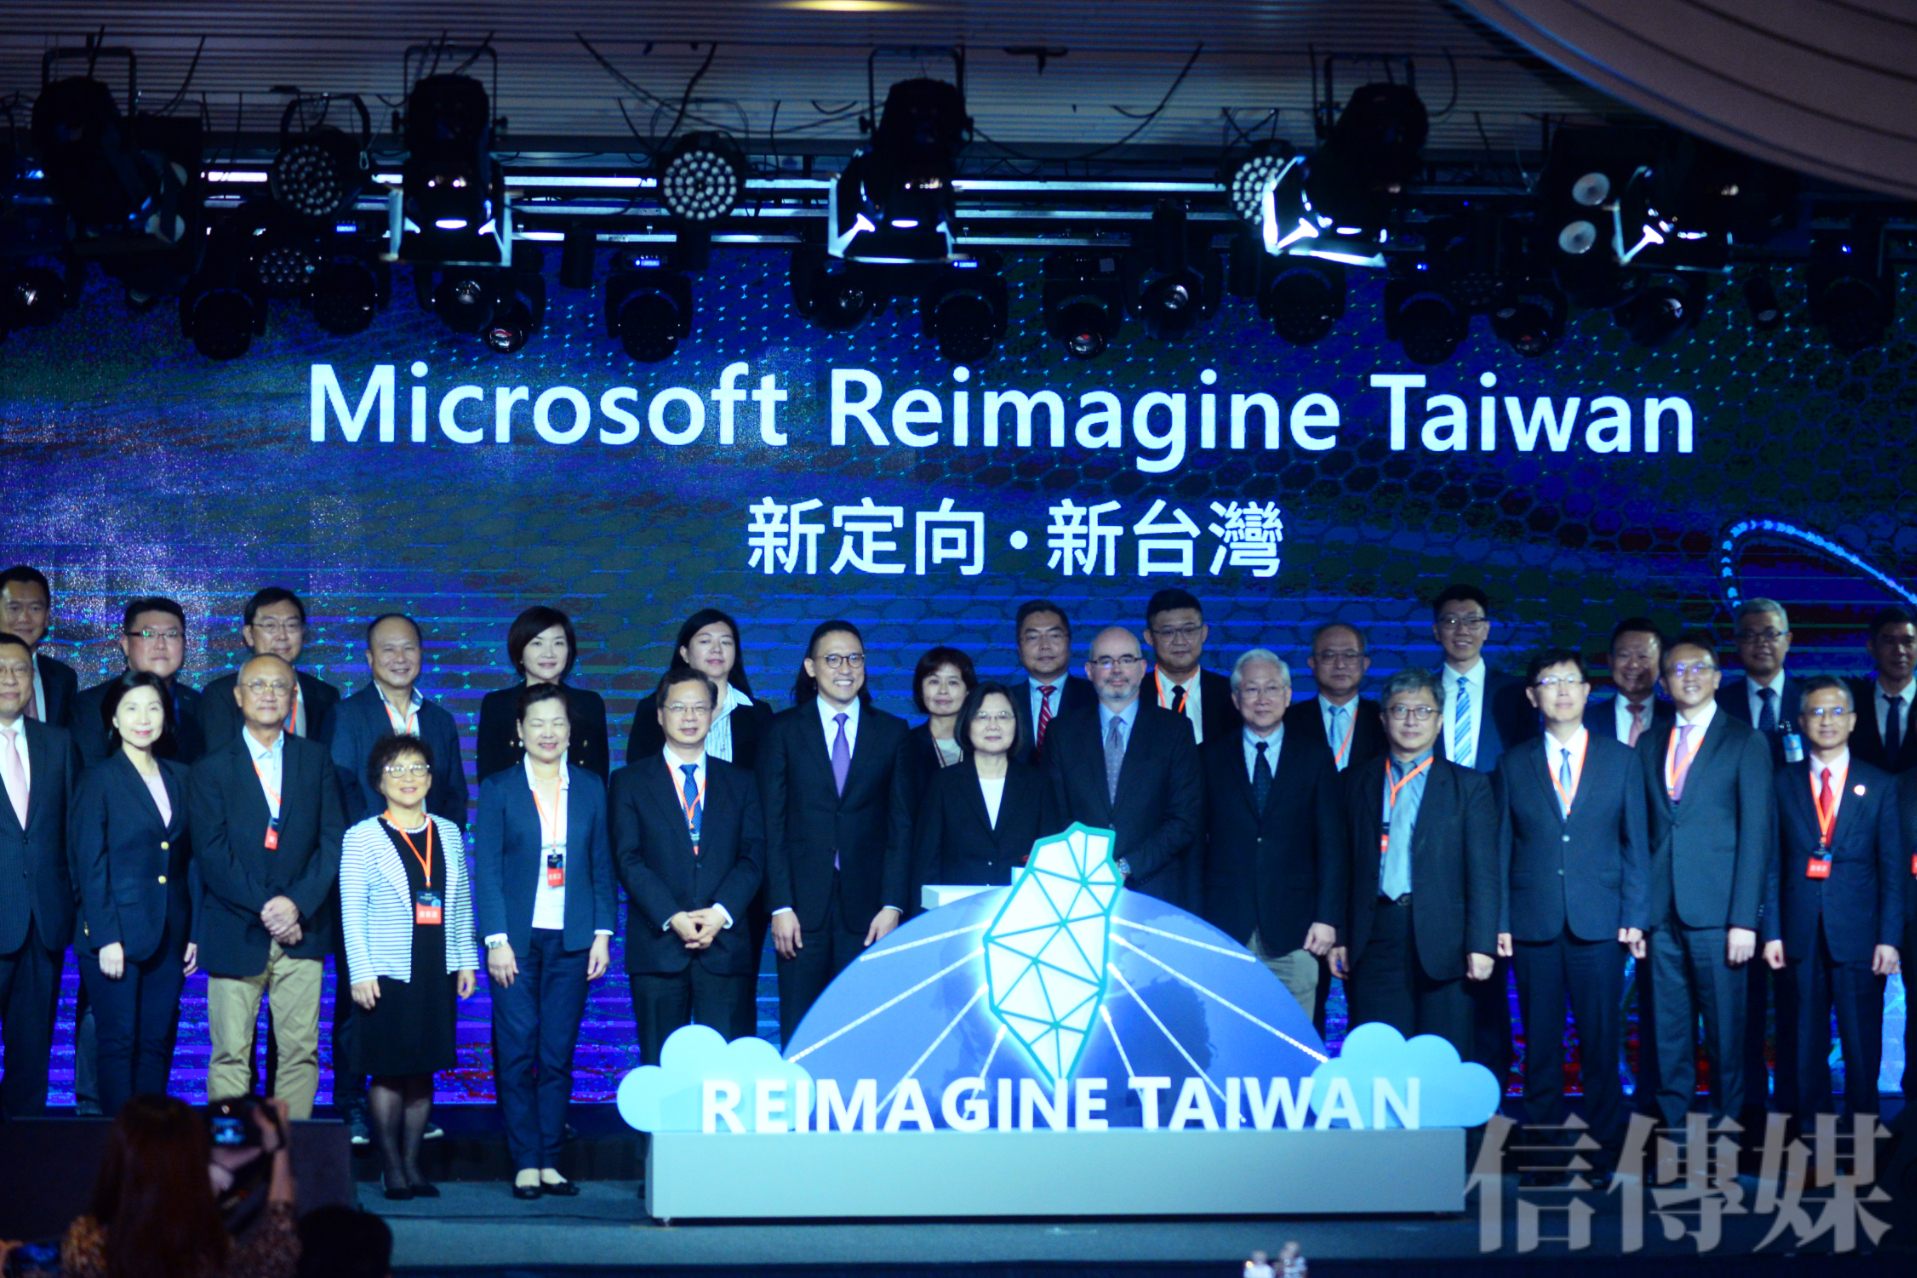 [情報] 微軟將在台灣建立區域級雲端資料中心